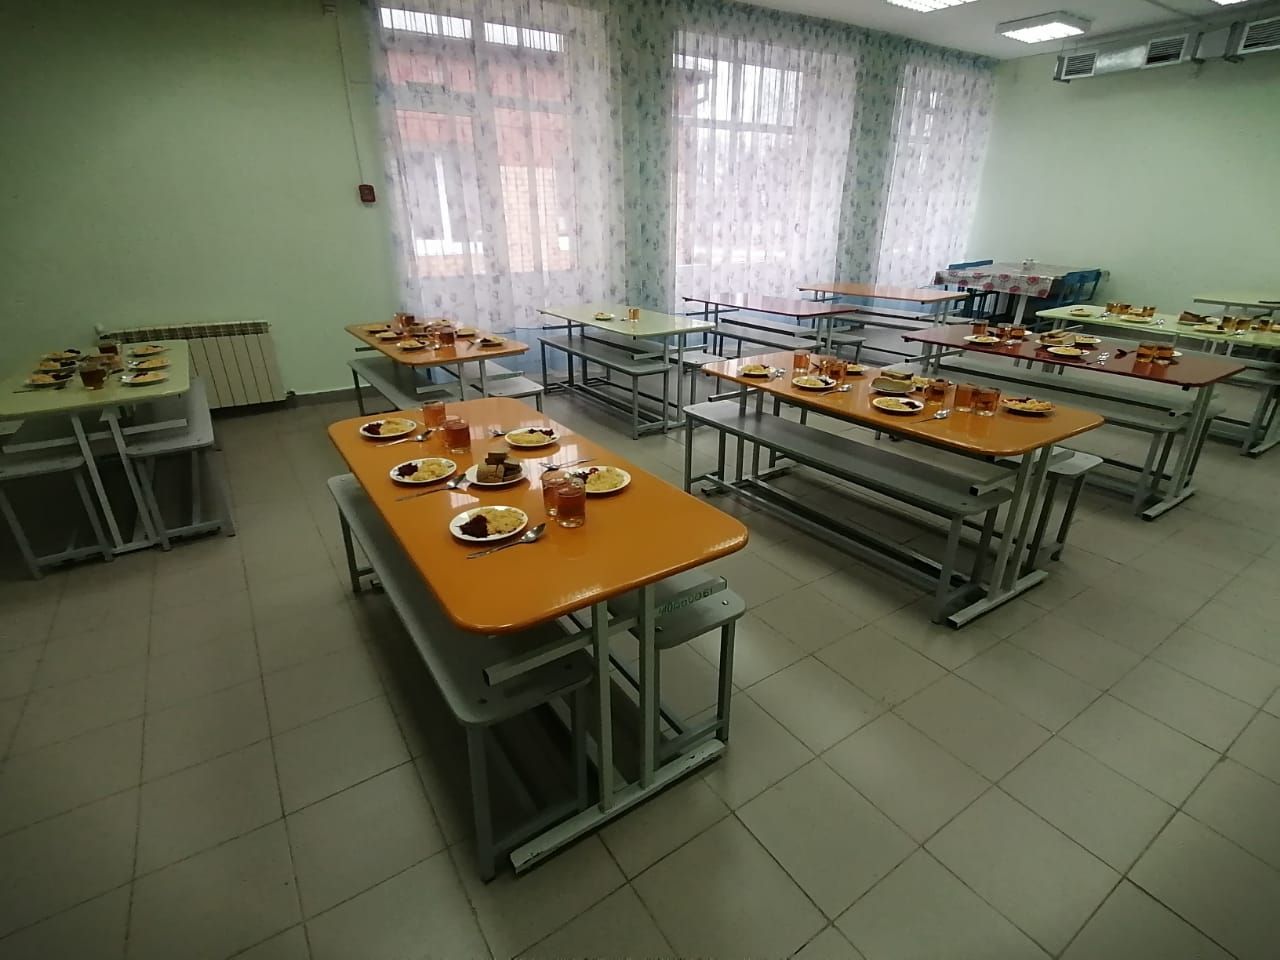 Родители села Рождествено проверили питание в школьной столовой